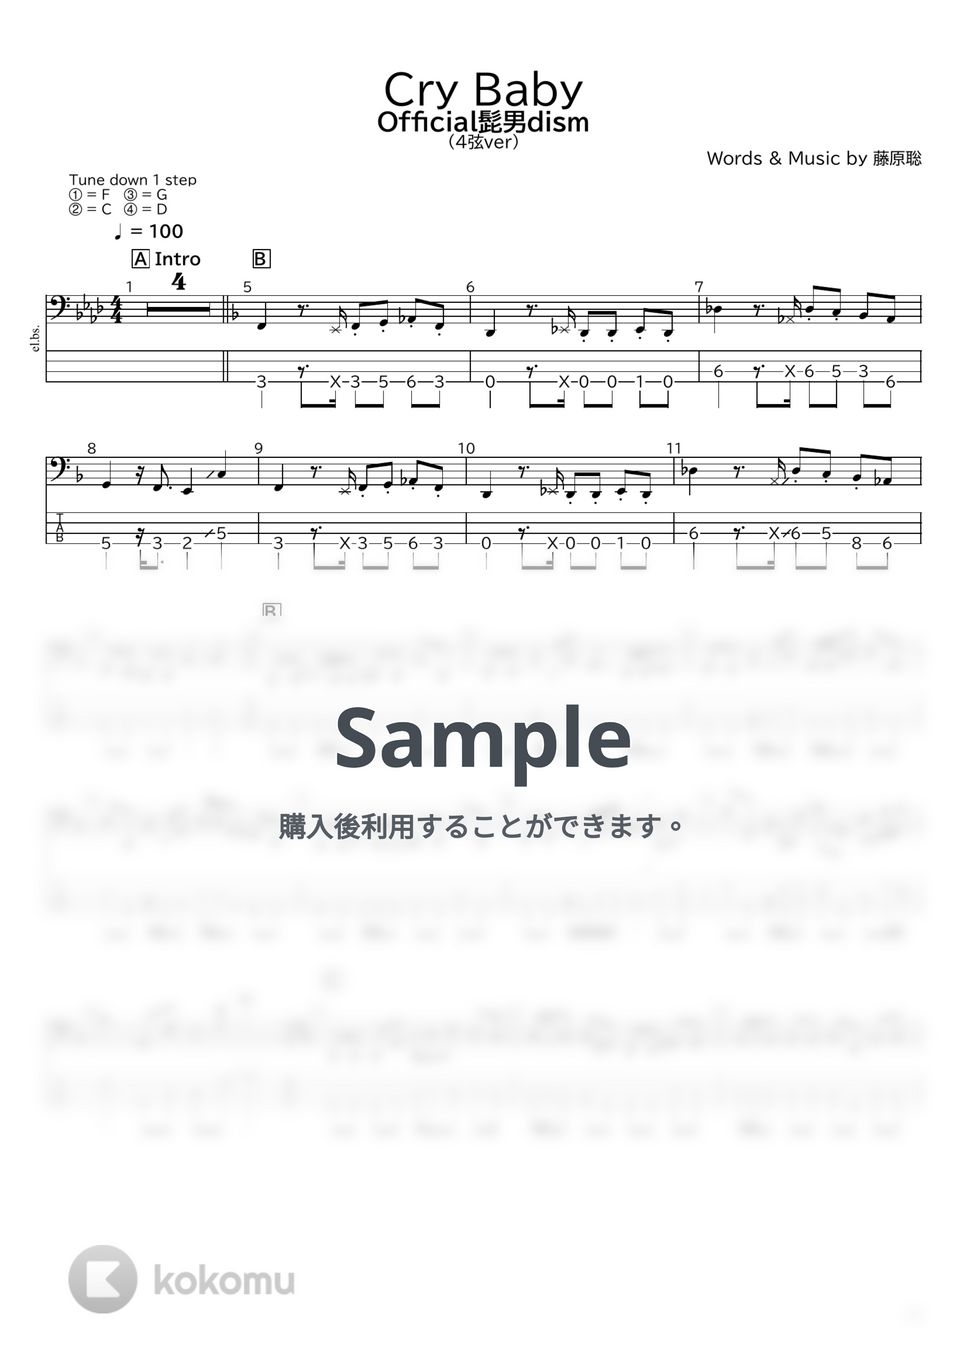 Official髭男dism - Cry Baby(4弦ver) by たぶべー